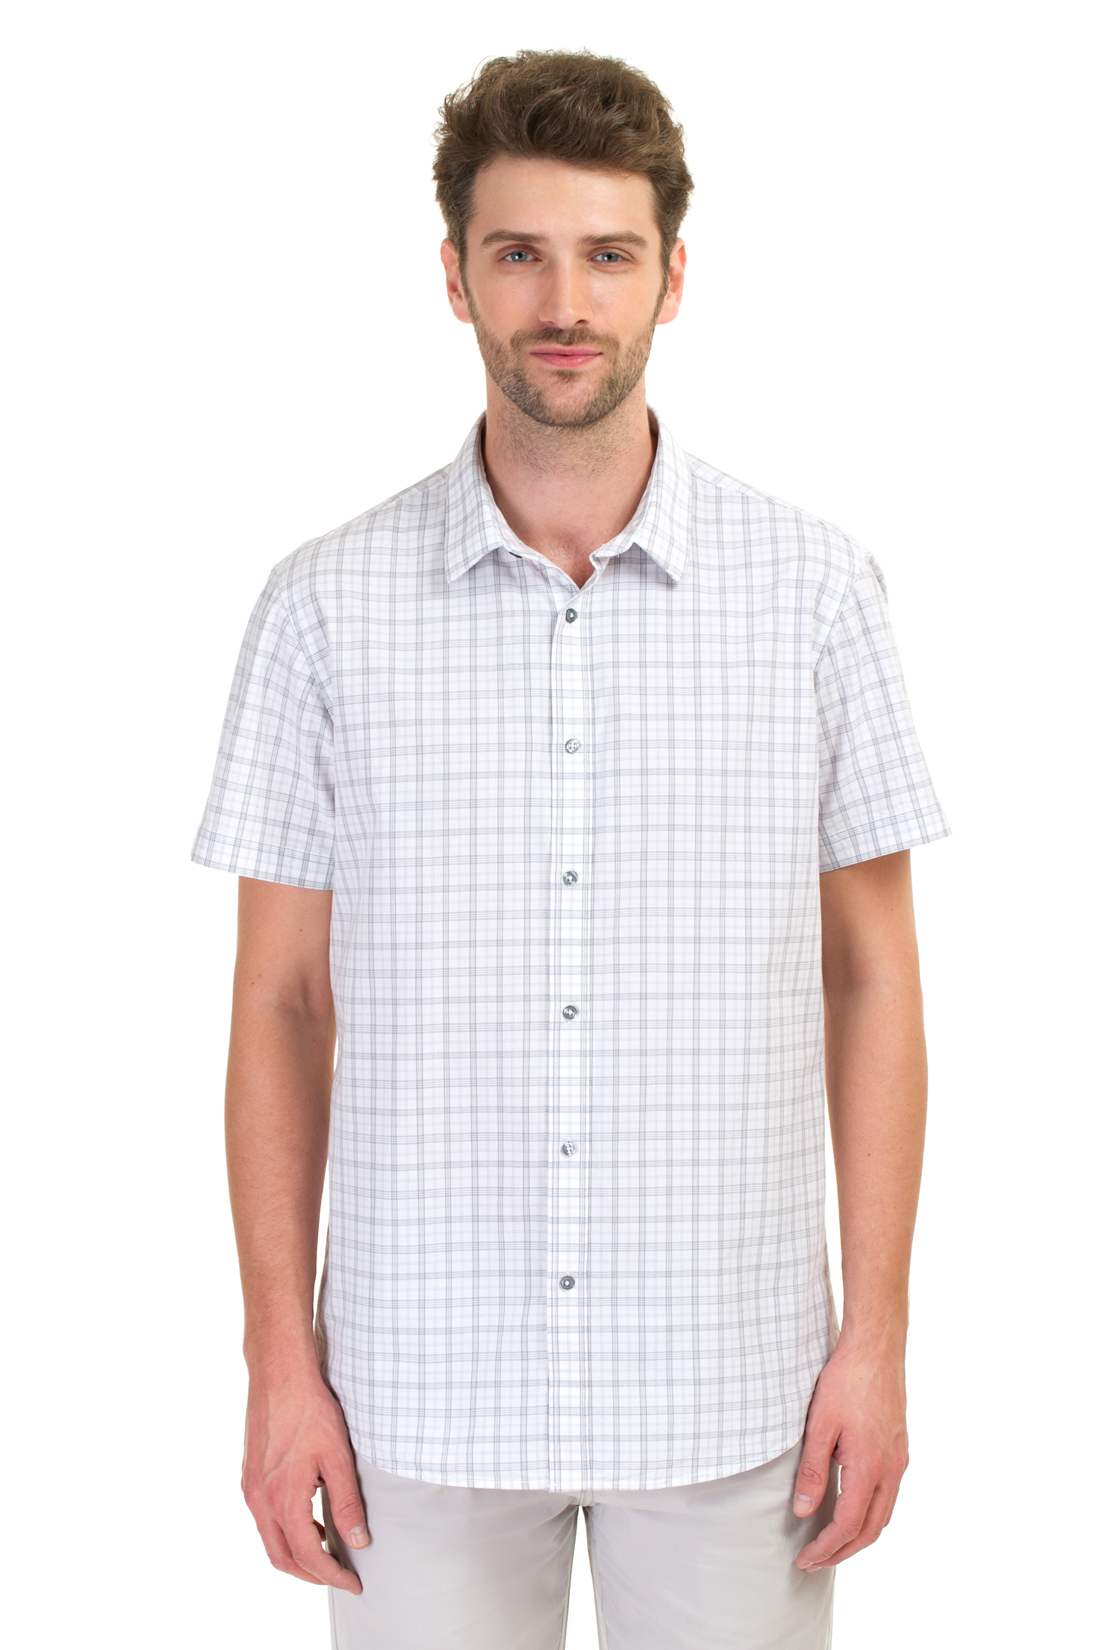 Рубашка в клетку с коротким рукавом (арт. baon B687020), размер XXL, цвет white checked#белый